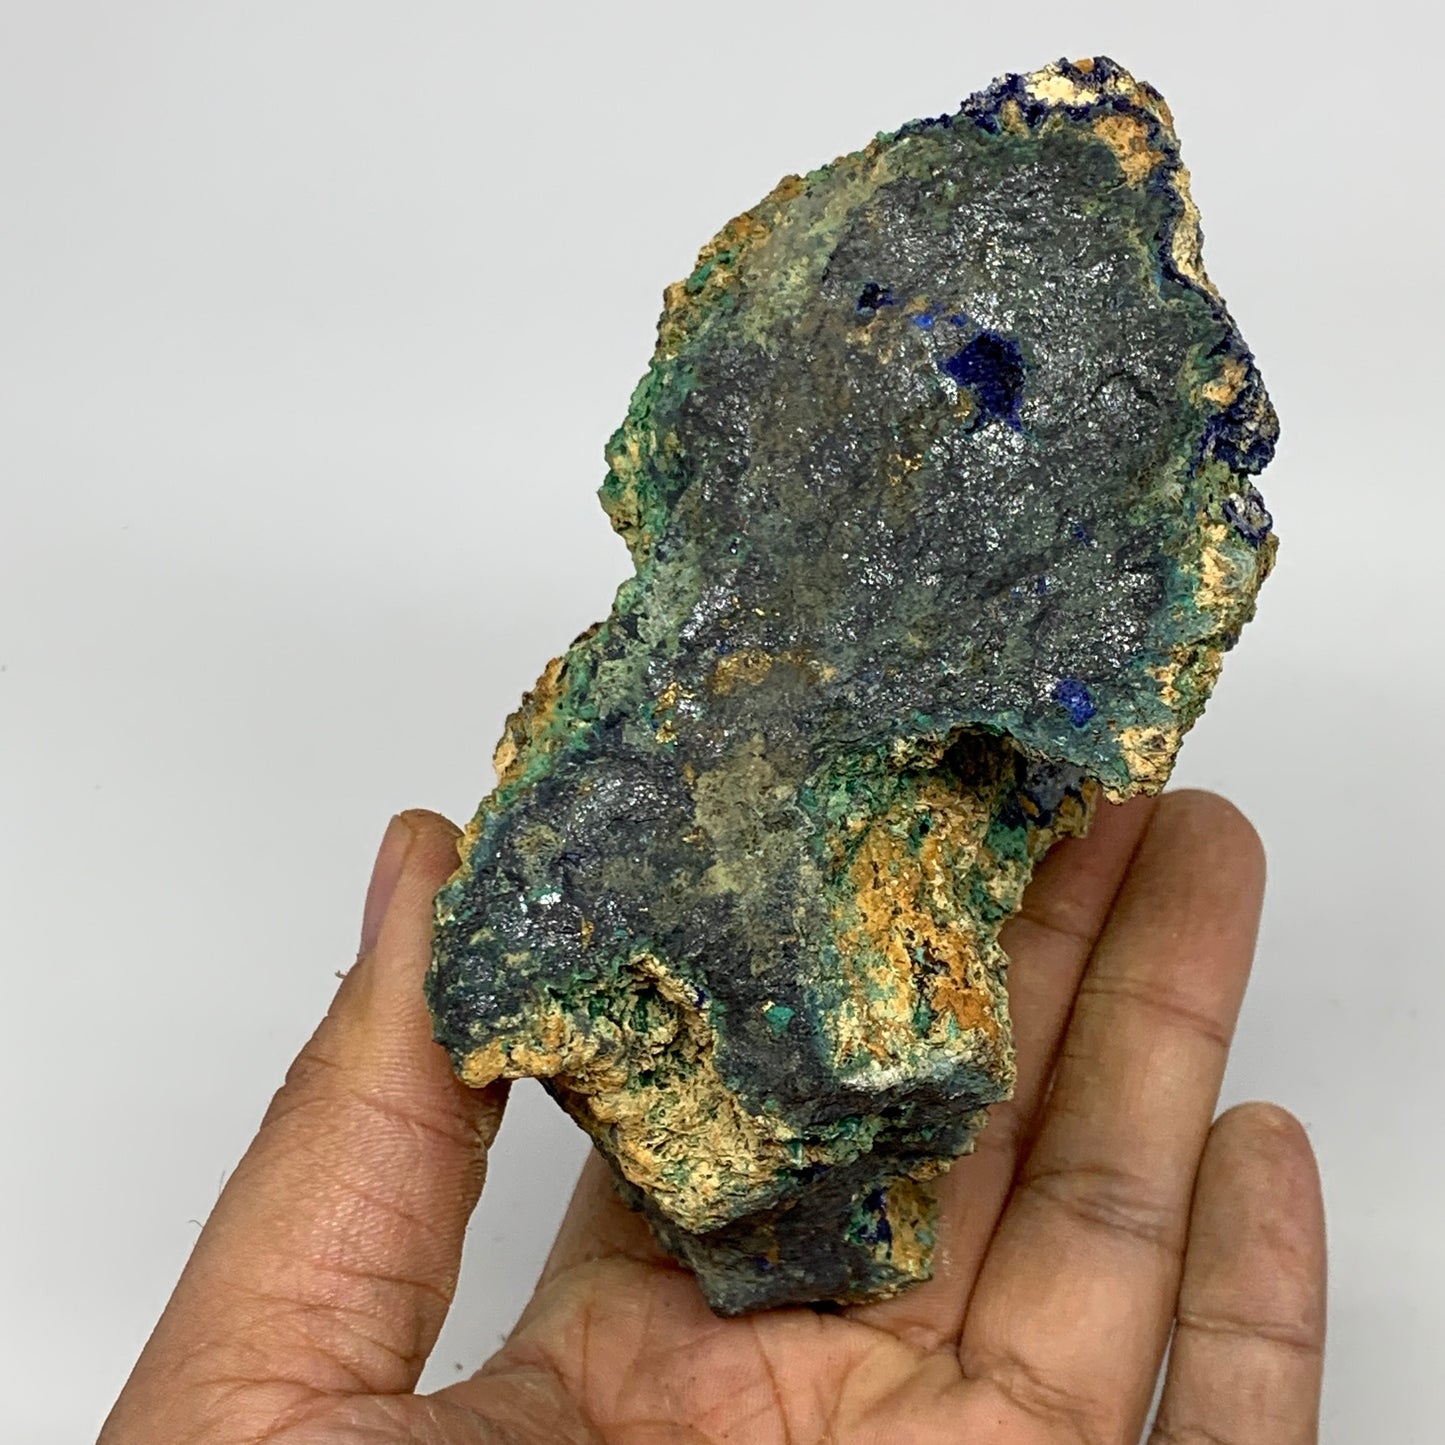 636g, 4.6"x2.4"x2.8", Rough Azurite Malachite Mineral Specimen @Morocco, B10920